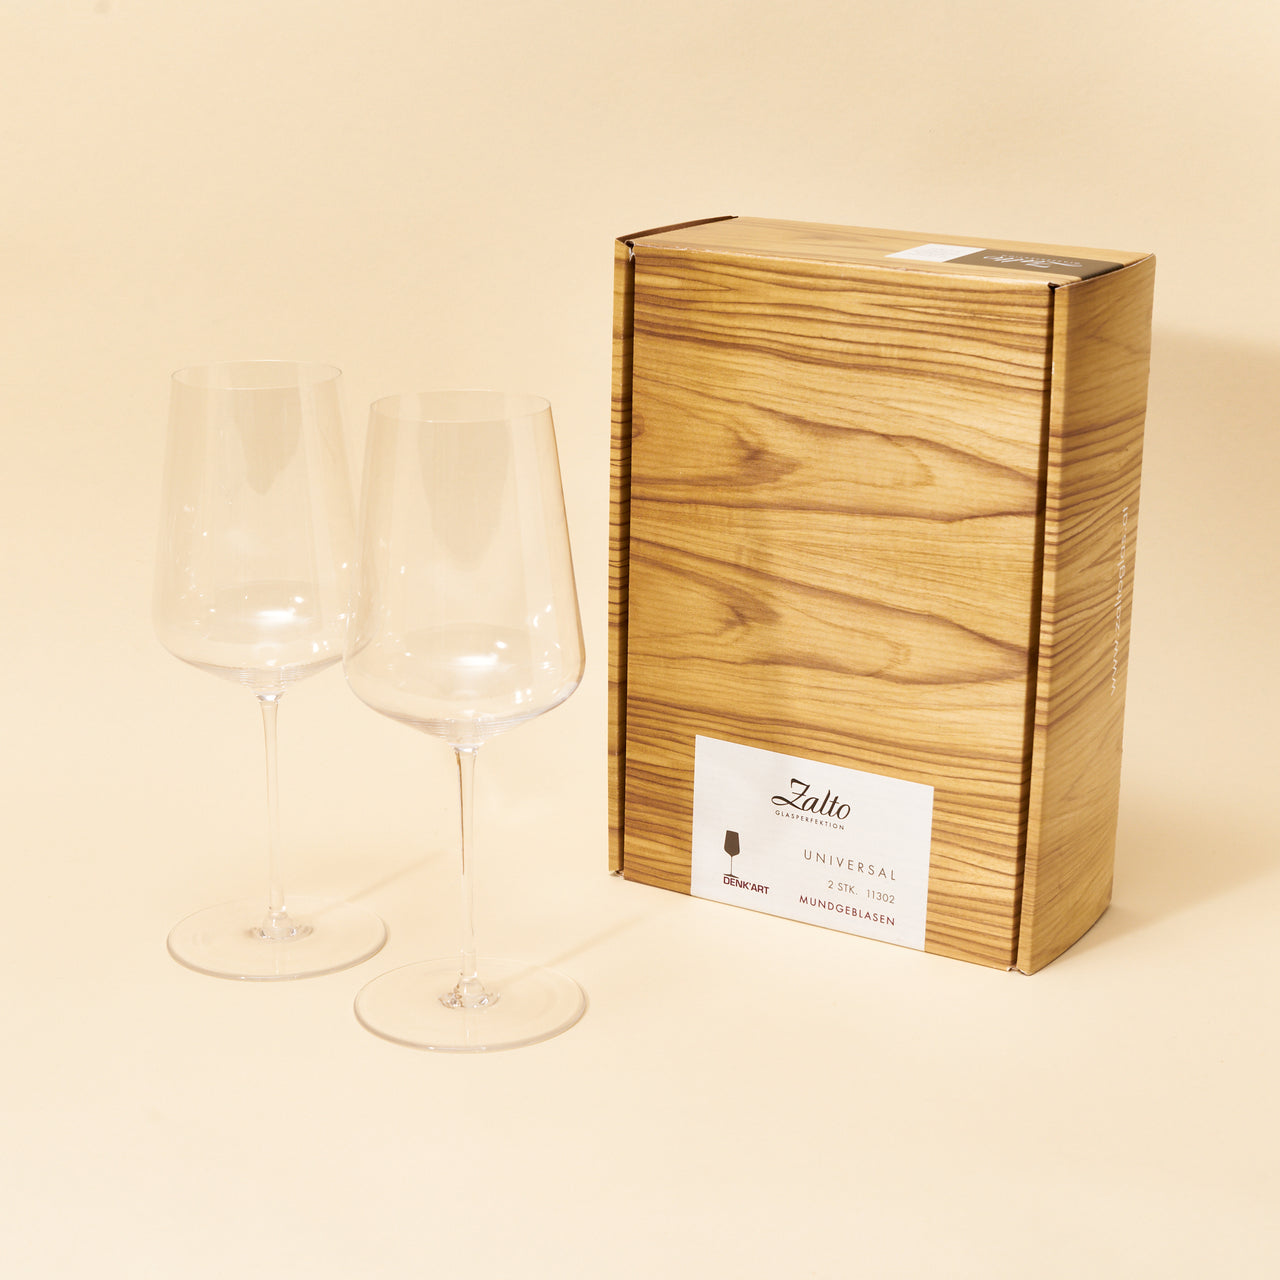 Zalto Universal Wine Glasses (Set of 2)